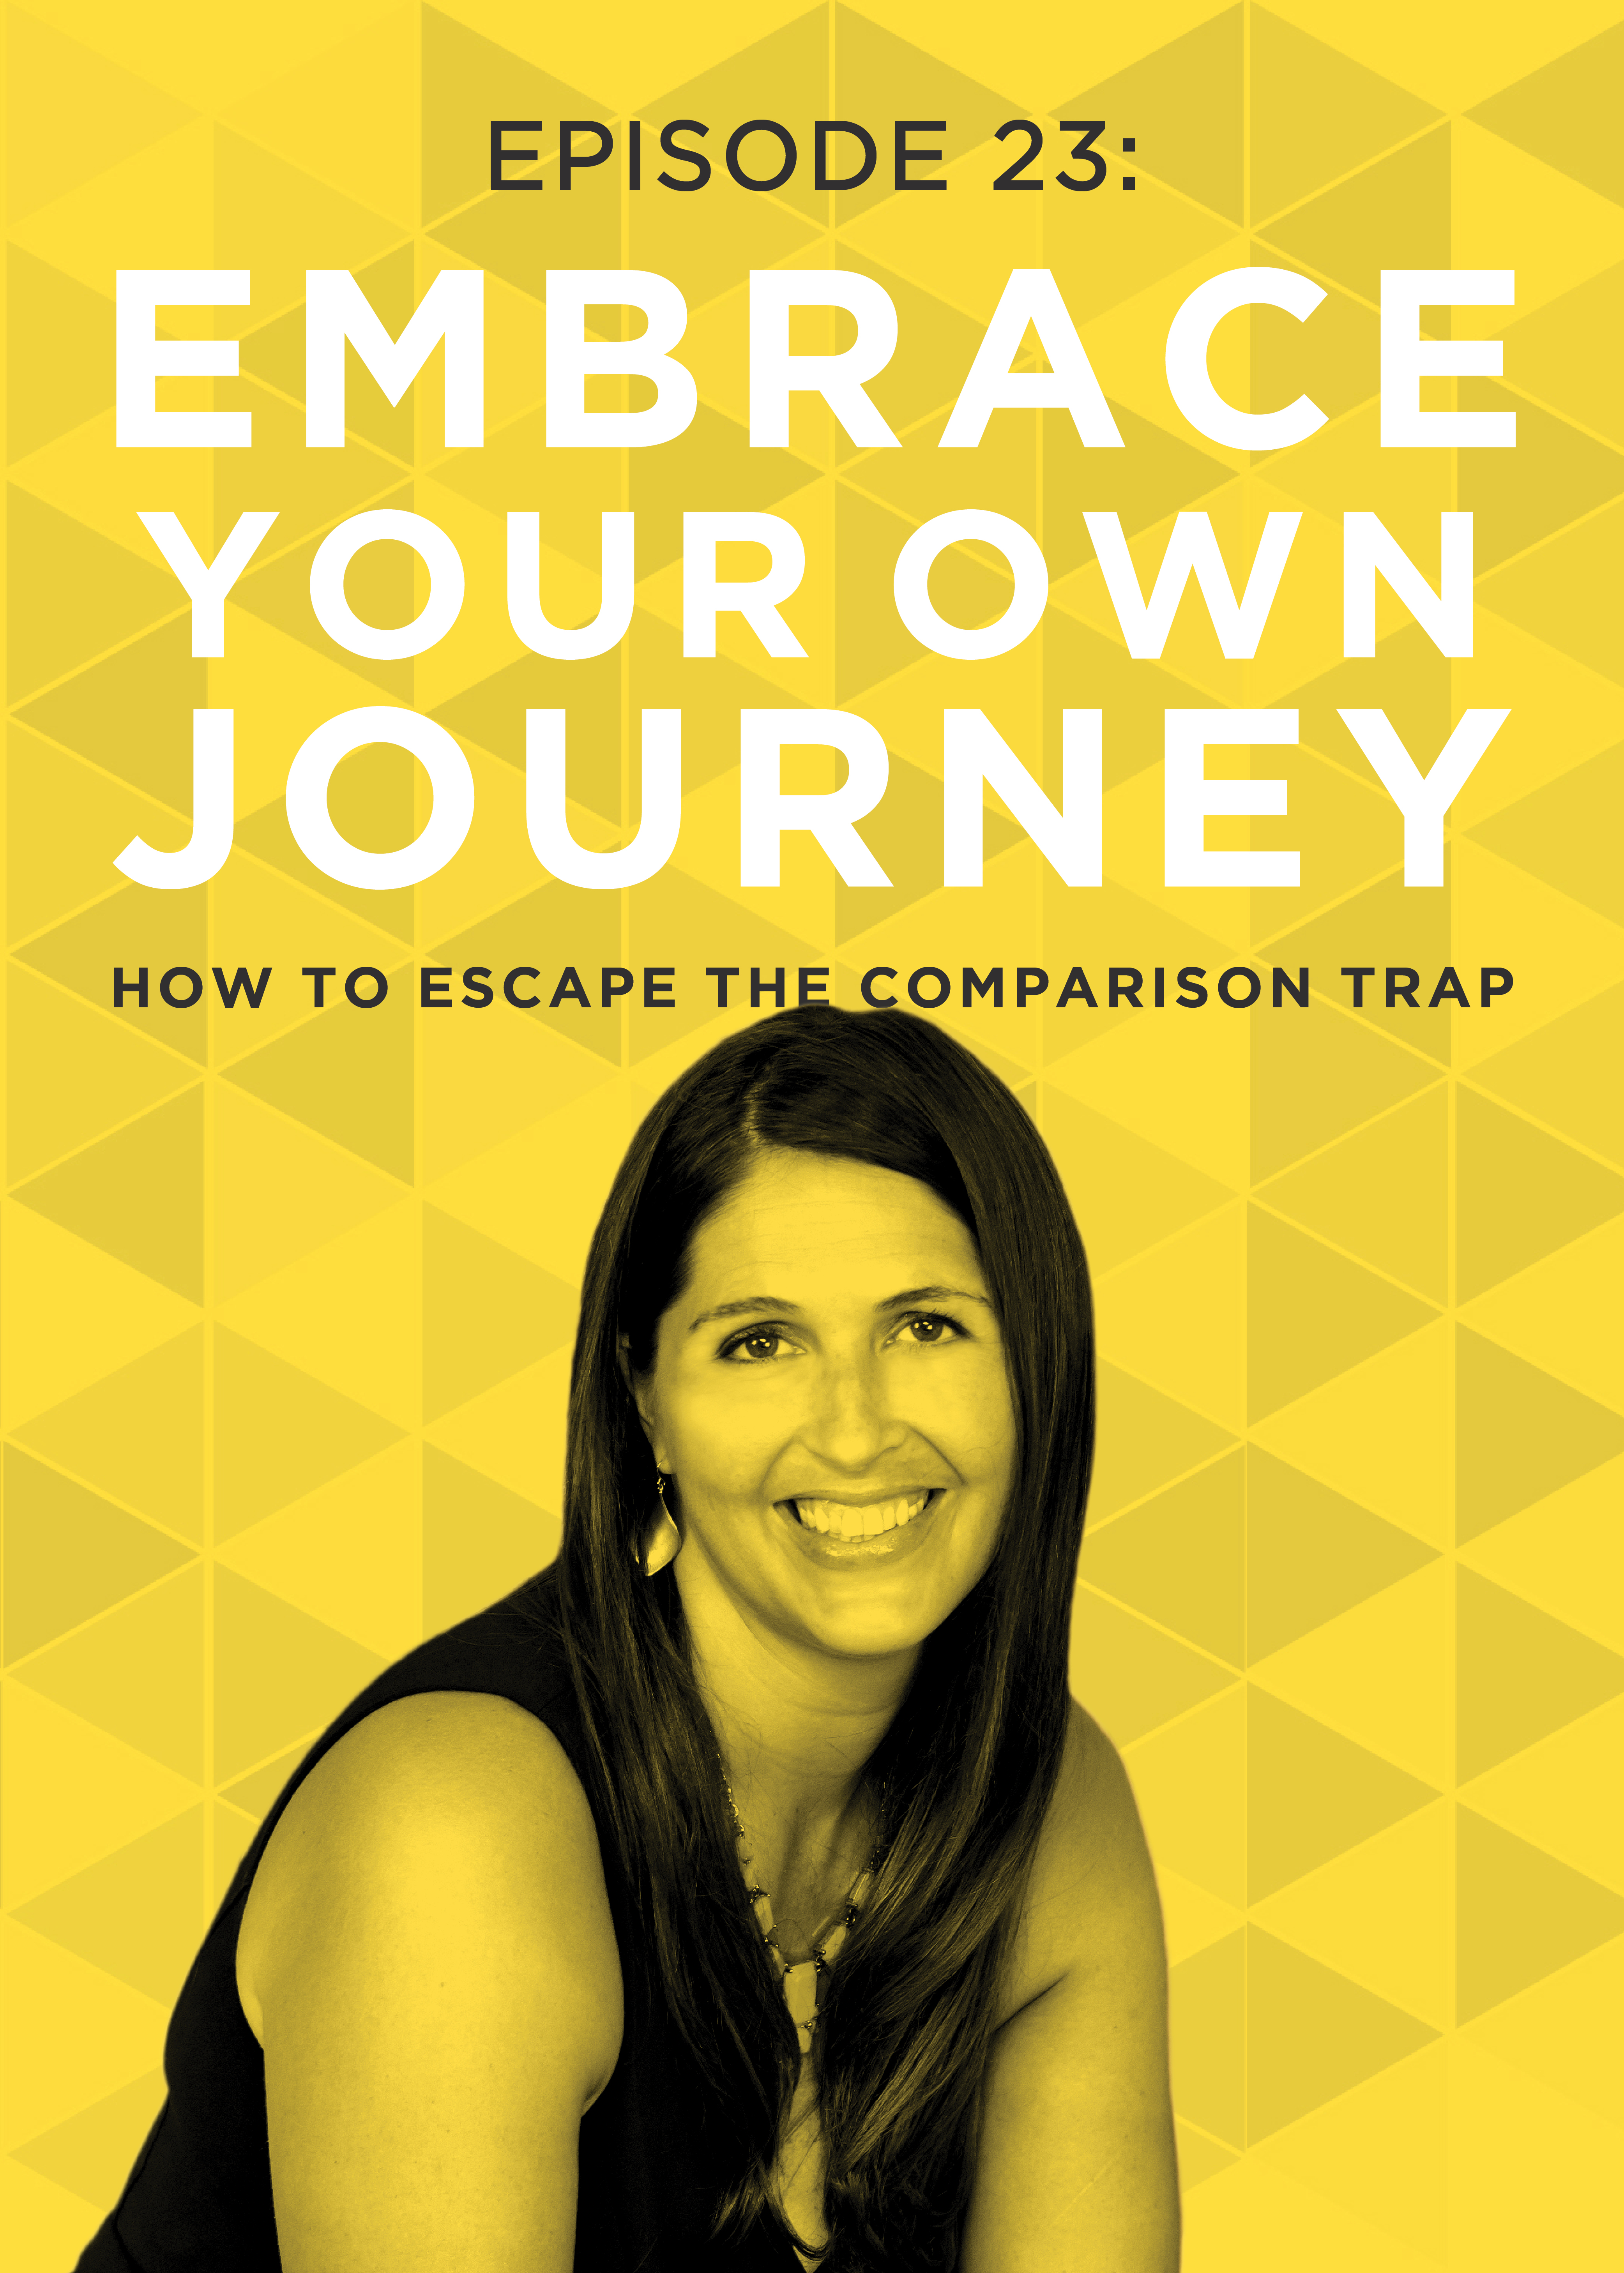 EP 23: How to Escape the Comparison Trap